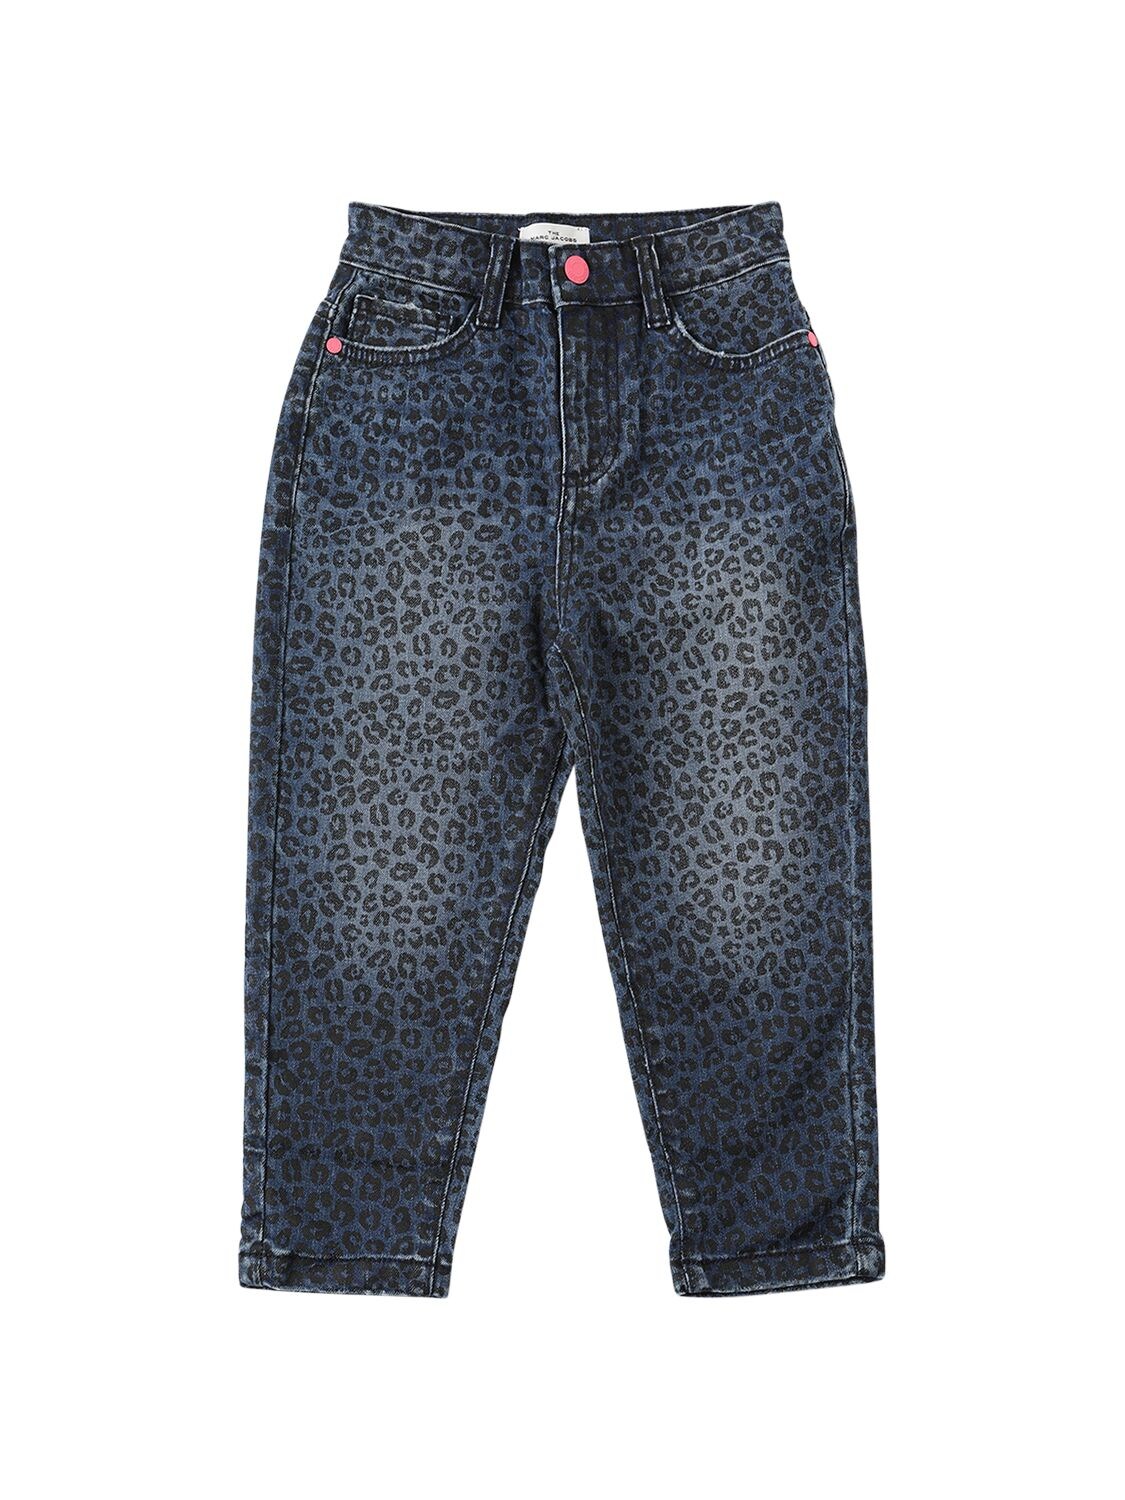 Marc Jacobs (the) Kids' Leopard Print Cotton Denim Jeans